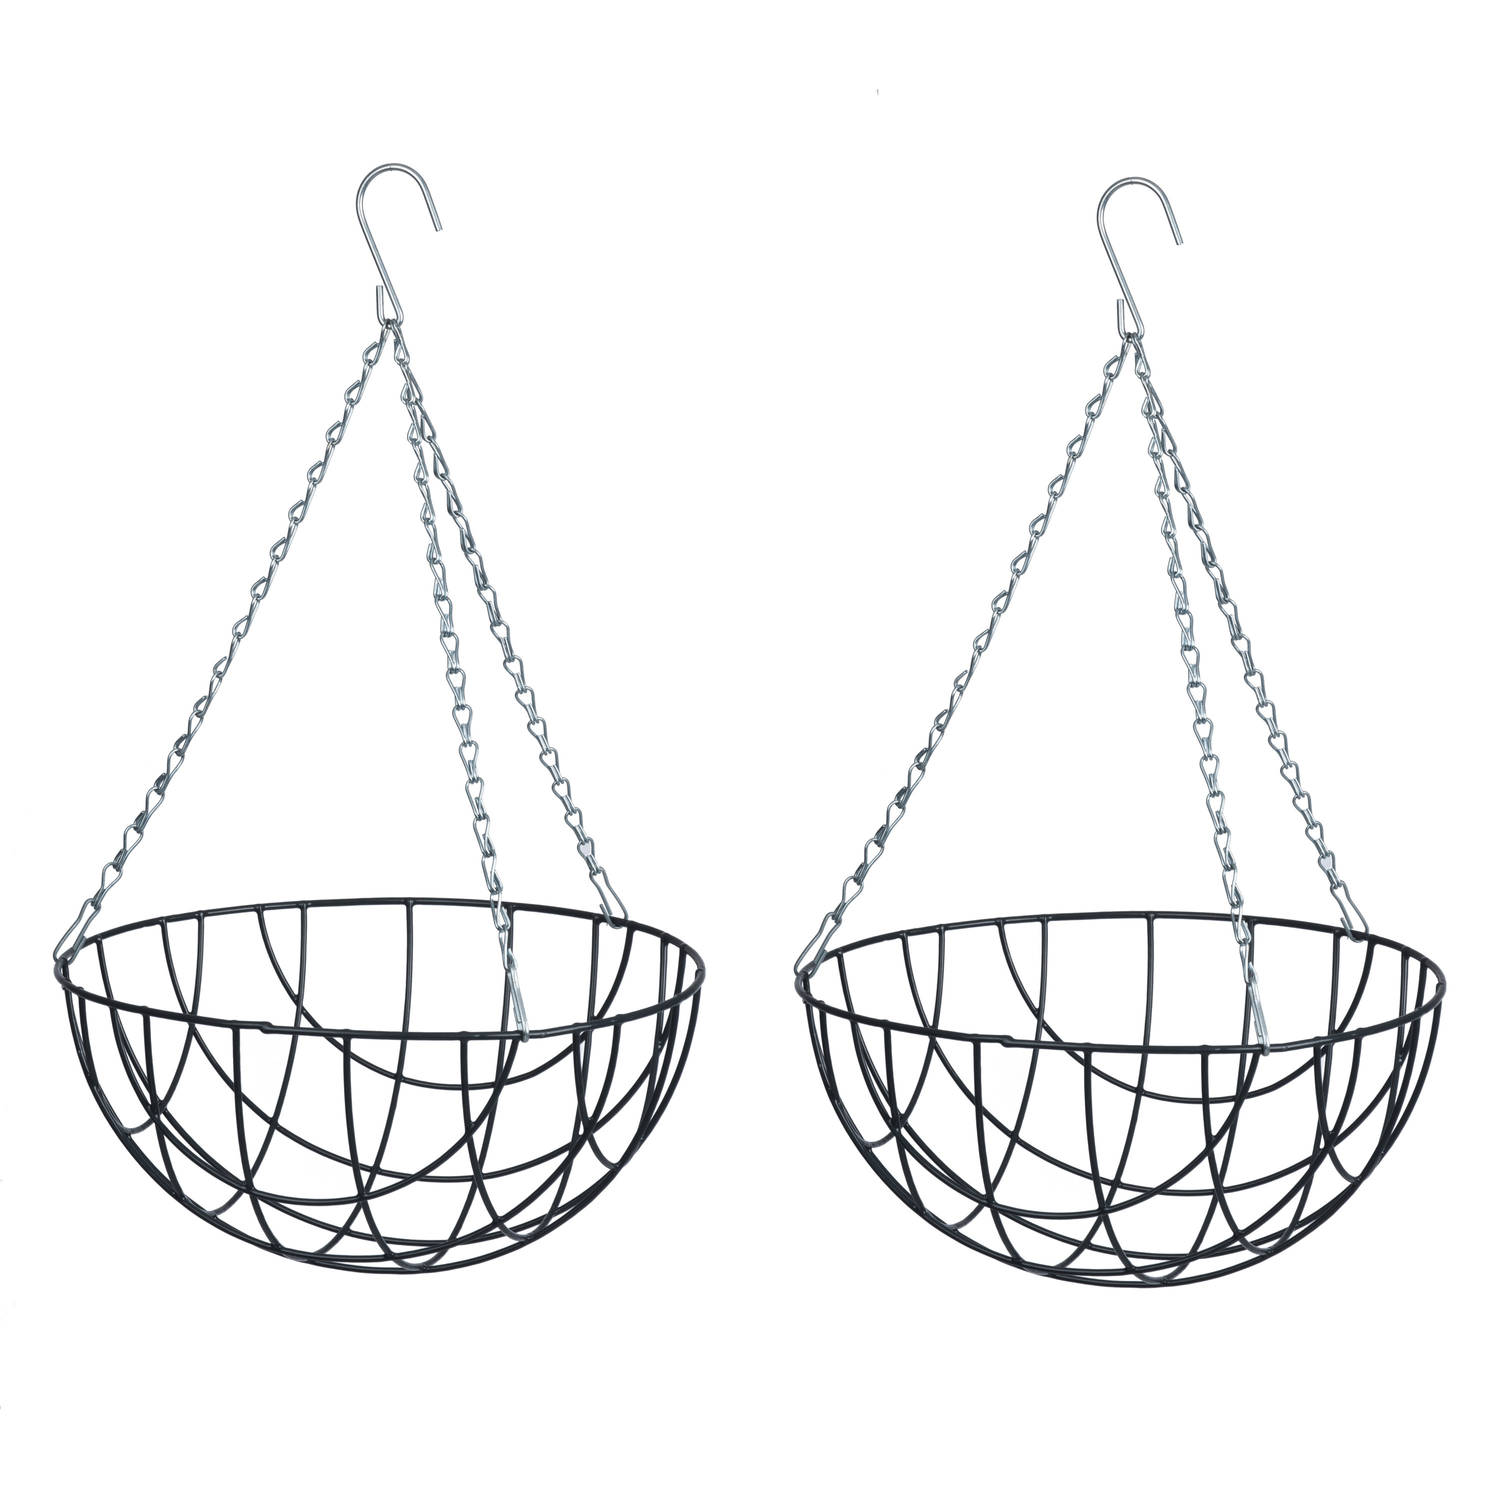 2x Stuks Hanging Basket-Plantenbak Grijs Met Ketting 17 X 35 X 35 Cm Metaaldraad Hangende Bloe Plant